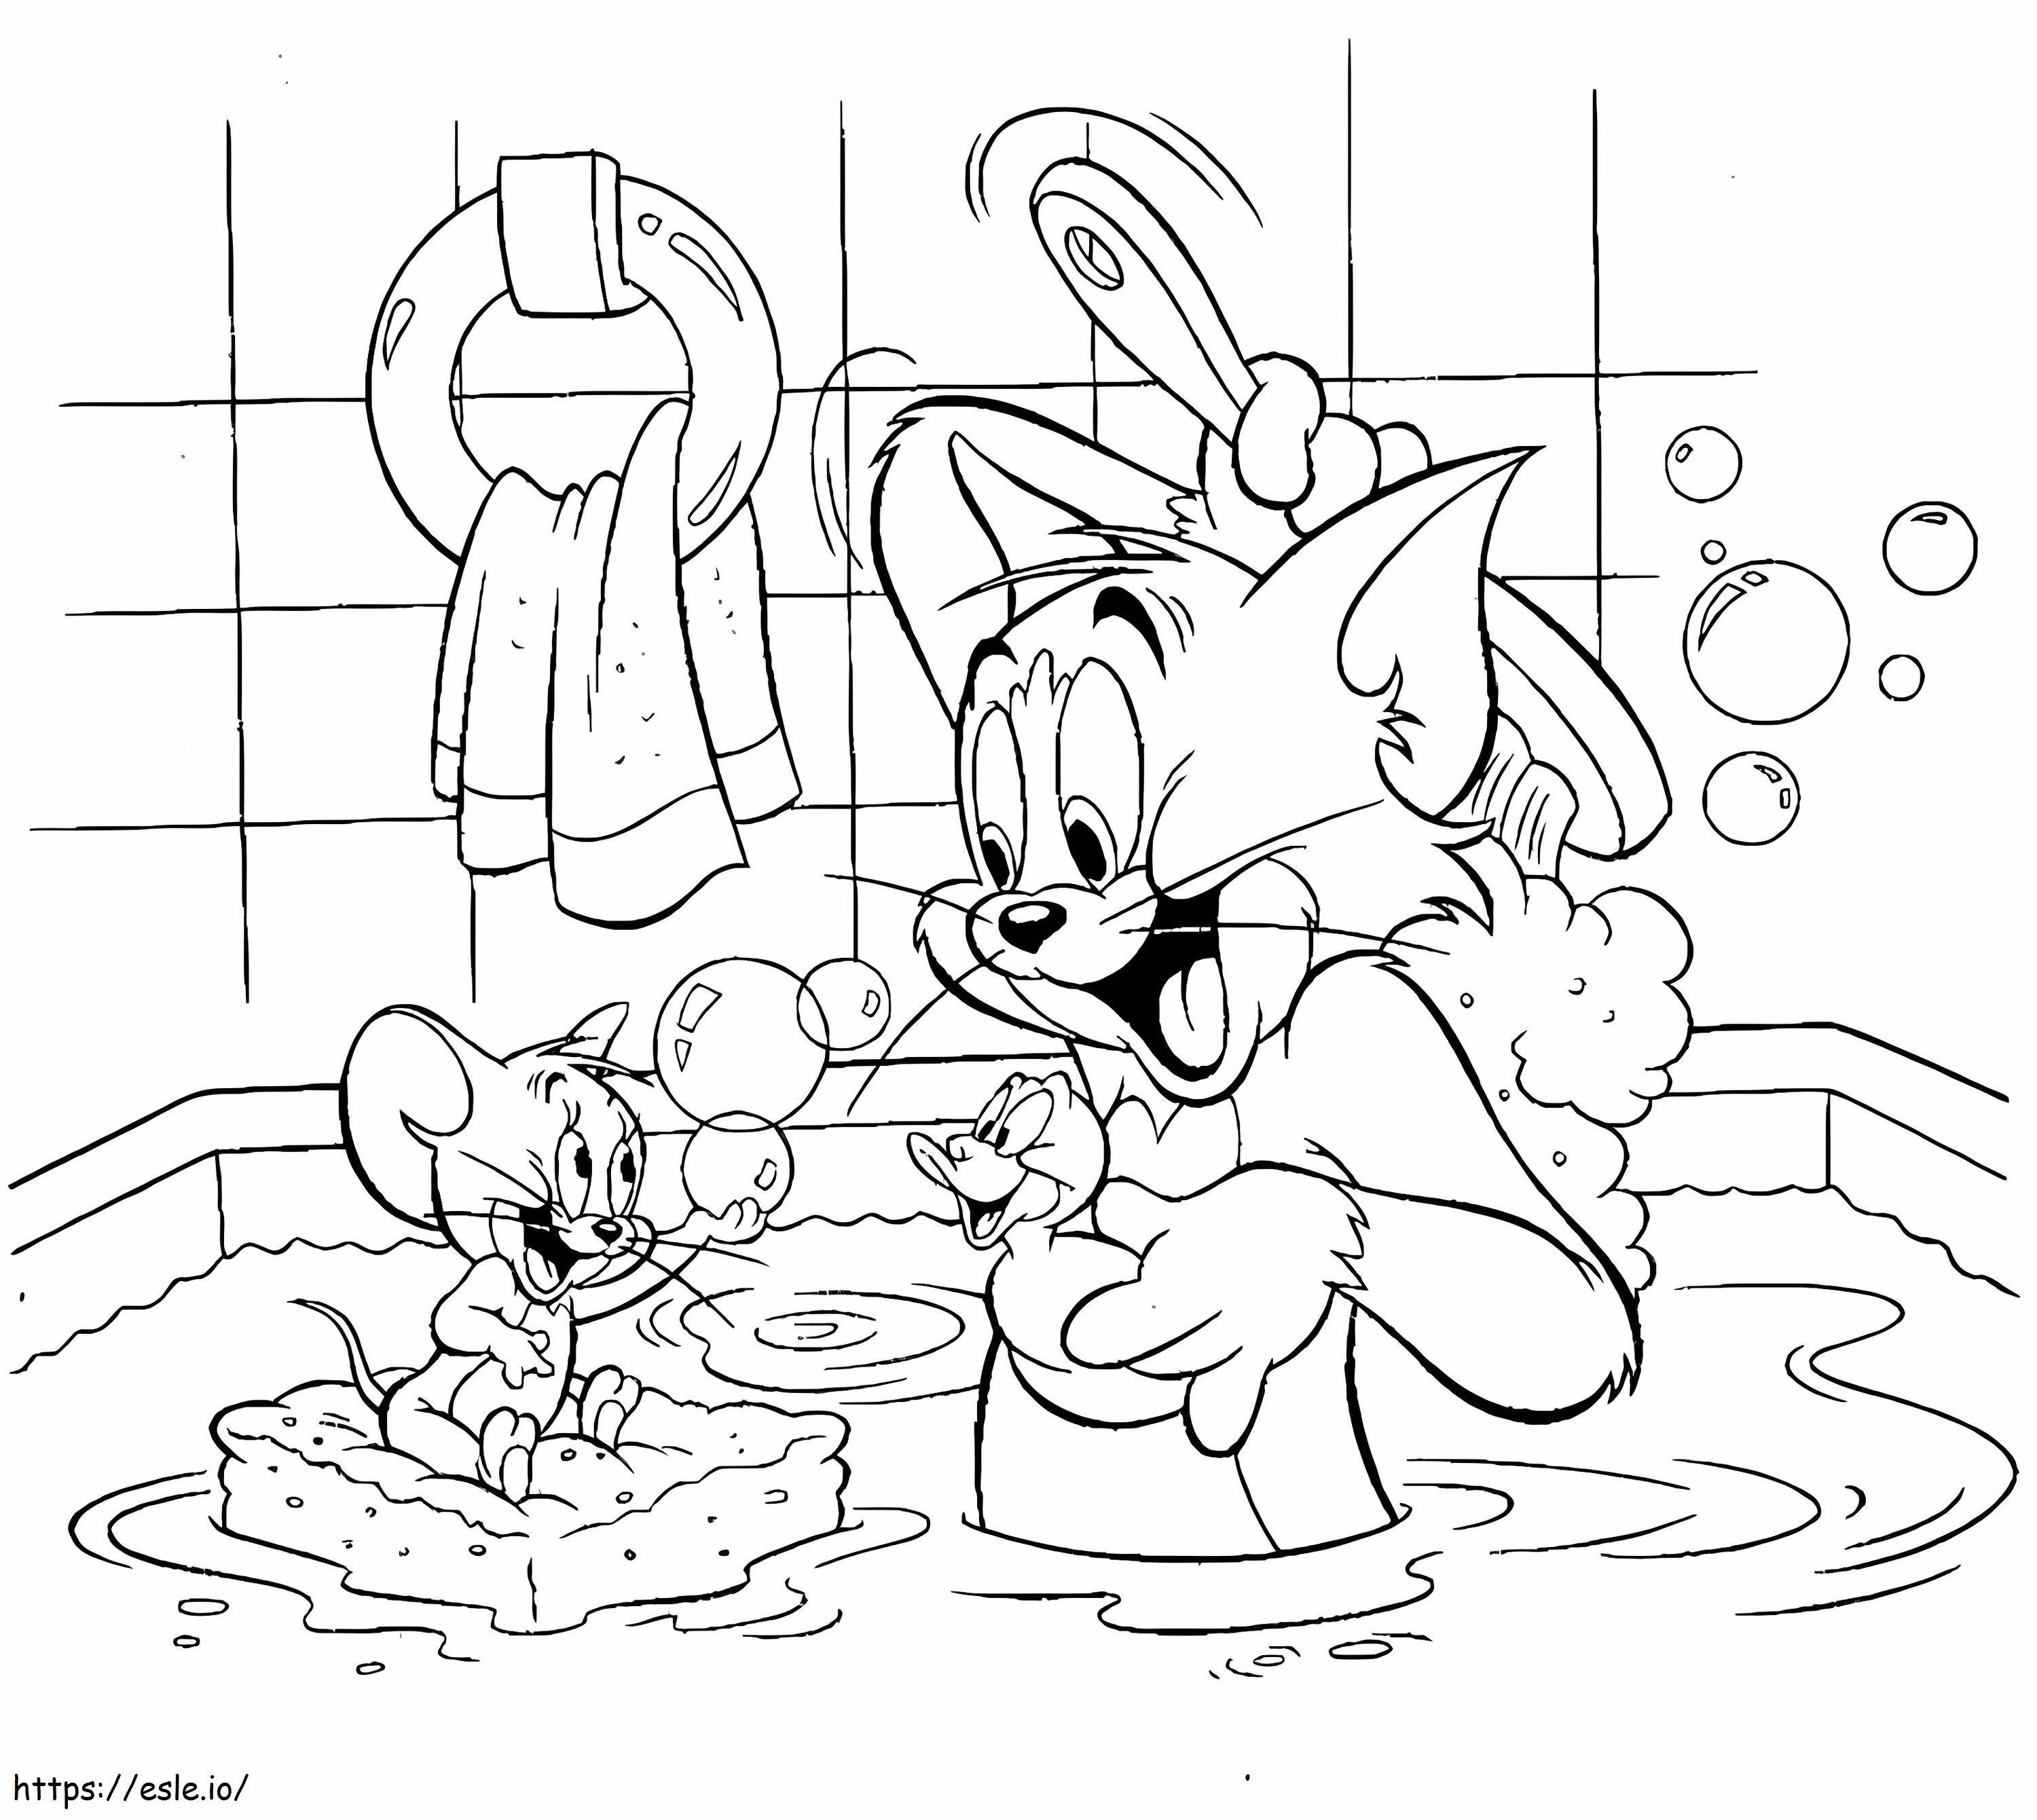 Tom și Jerry practică igiena de colorat